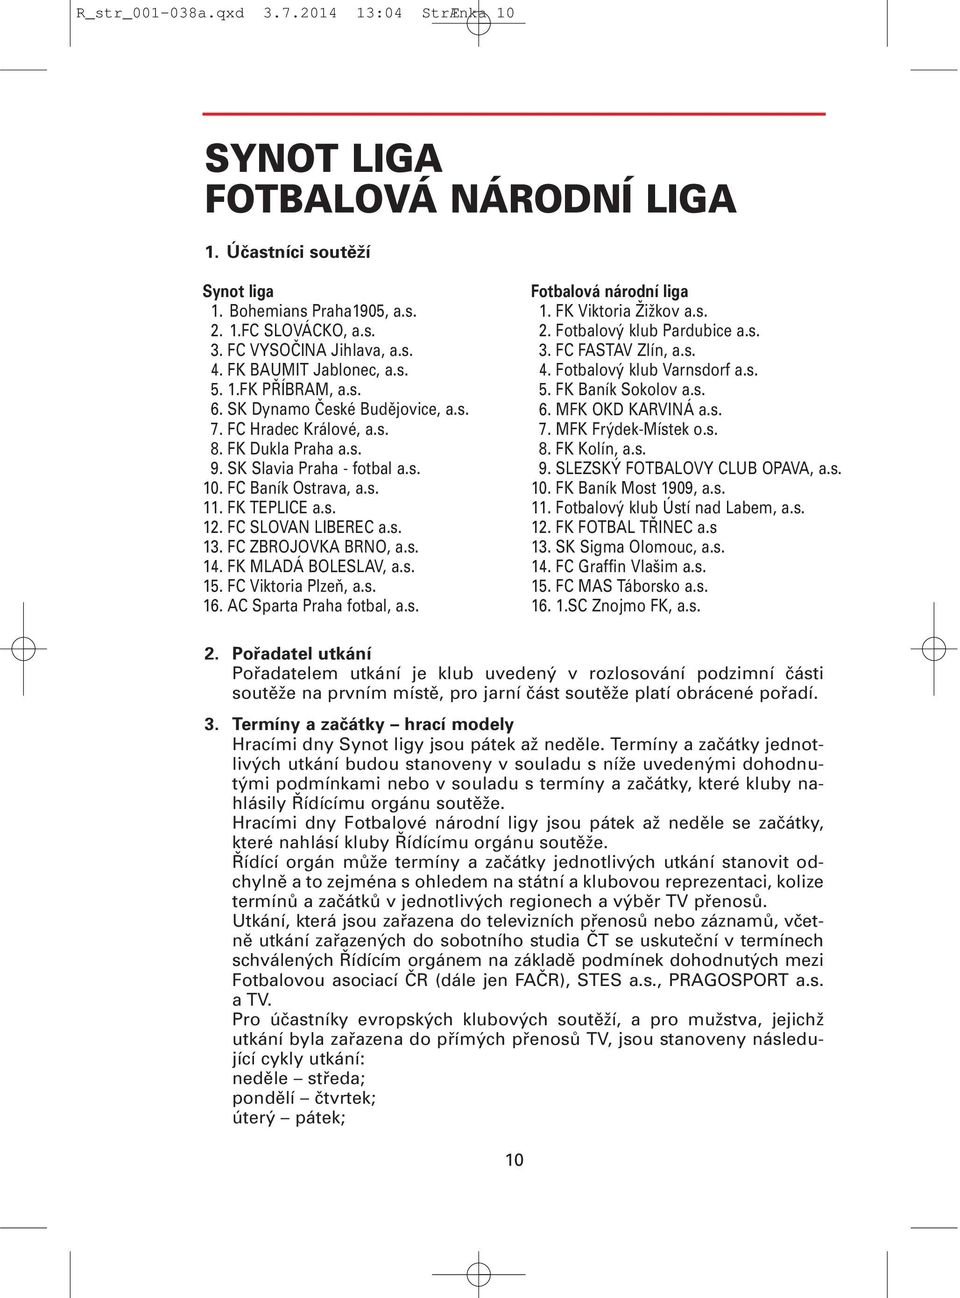 FK TEPLICE a.s. 12. FC SLOVAN LIBEREC a.s. 13. FC ZBROJOVKA BRNO, a.s. 14. FK MLADÁ BOLESLAV, a.s. 15. FC Viktoria Plzeň, a.s. 16. AC Sparta Praha fotbal, a.s. Fotbalová národní liga 1.